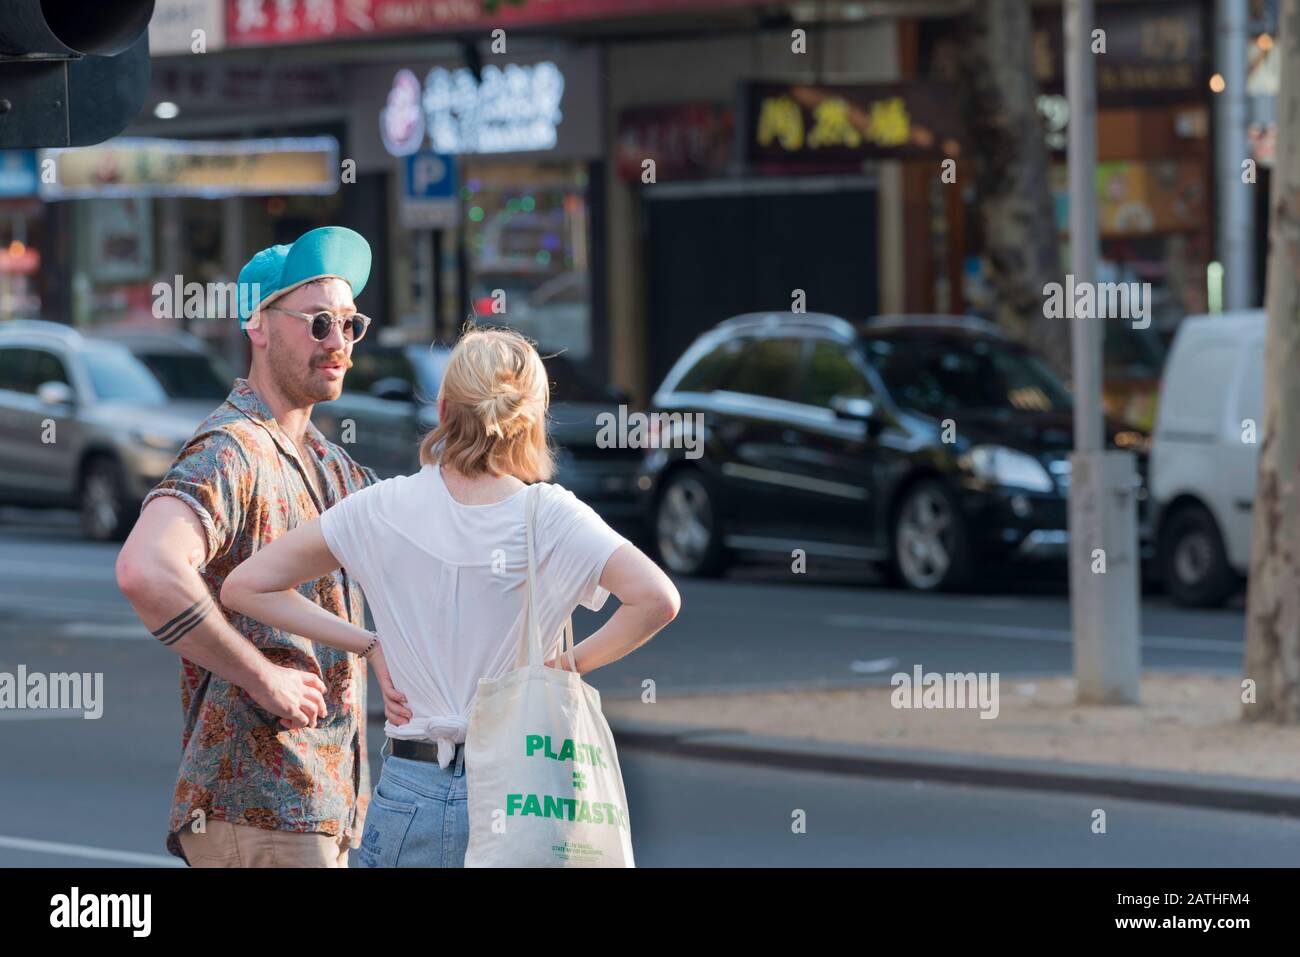 Ein junger Mann in Sonnenbrille und eine hochgedrehte Baseballmütze steht mit einer jungen Frau in einem weißen T-Shirt, an einer Straßenecke im inneren Melbourne, Australien Stockfoto